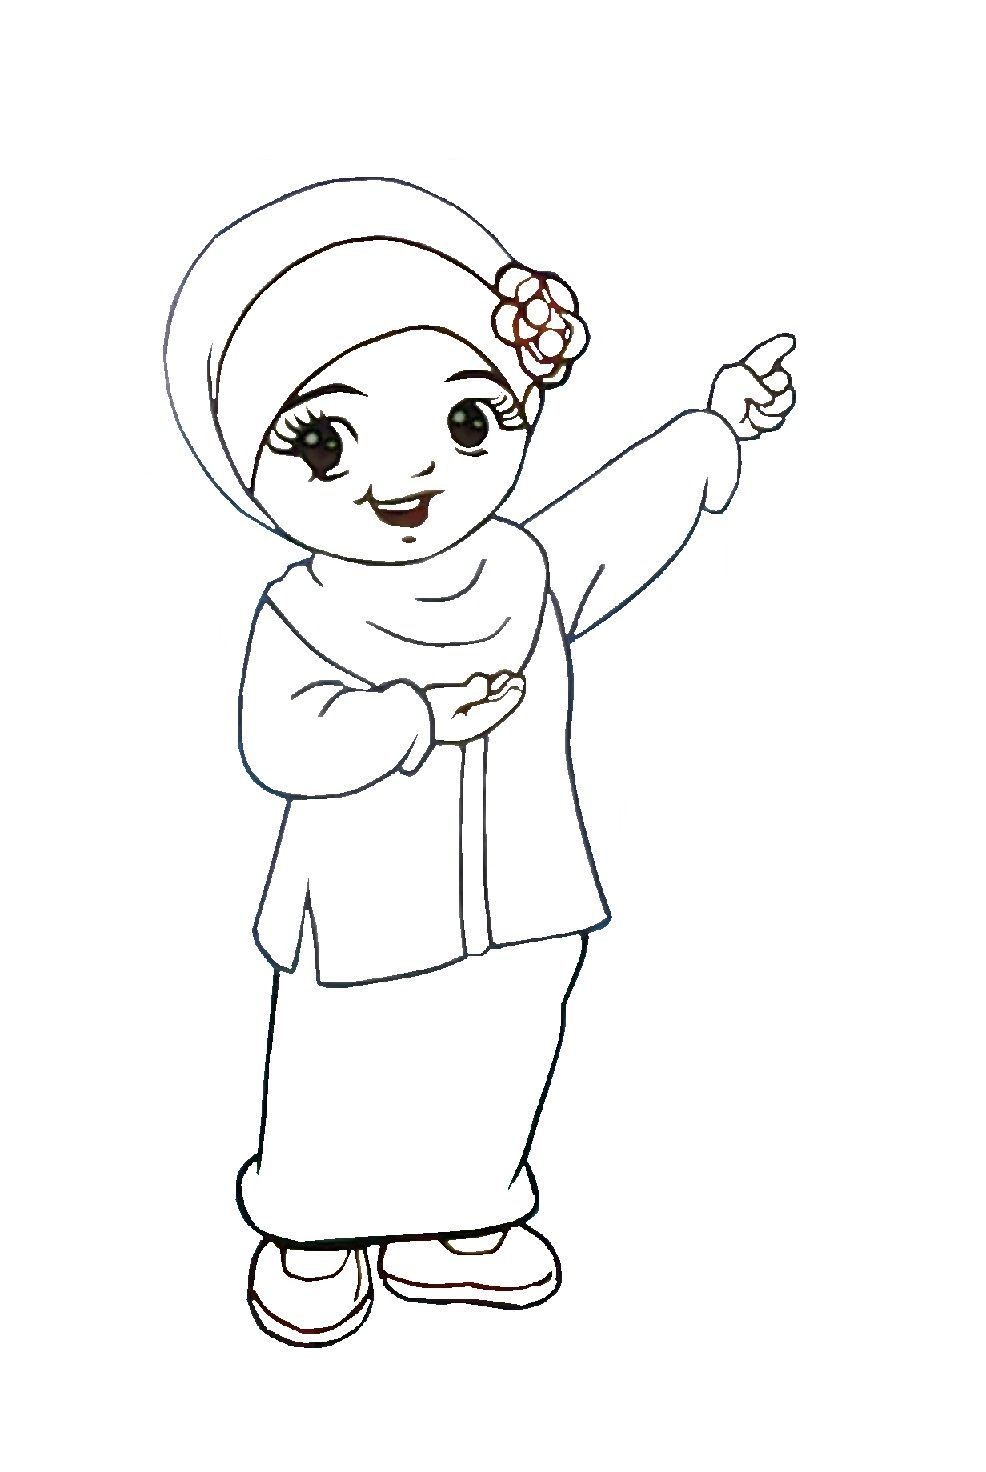 Gambar Mewarna Kartun Anak Muslim Medsos Kini